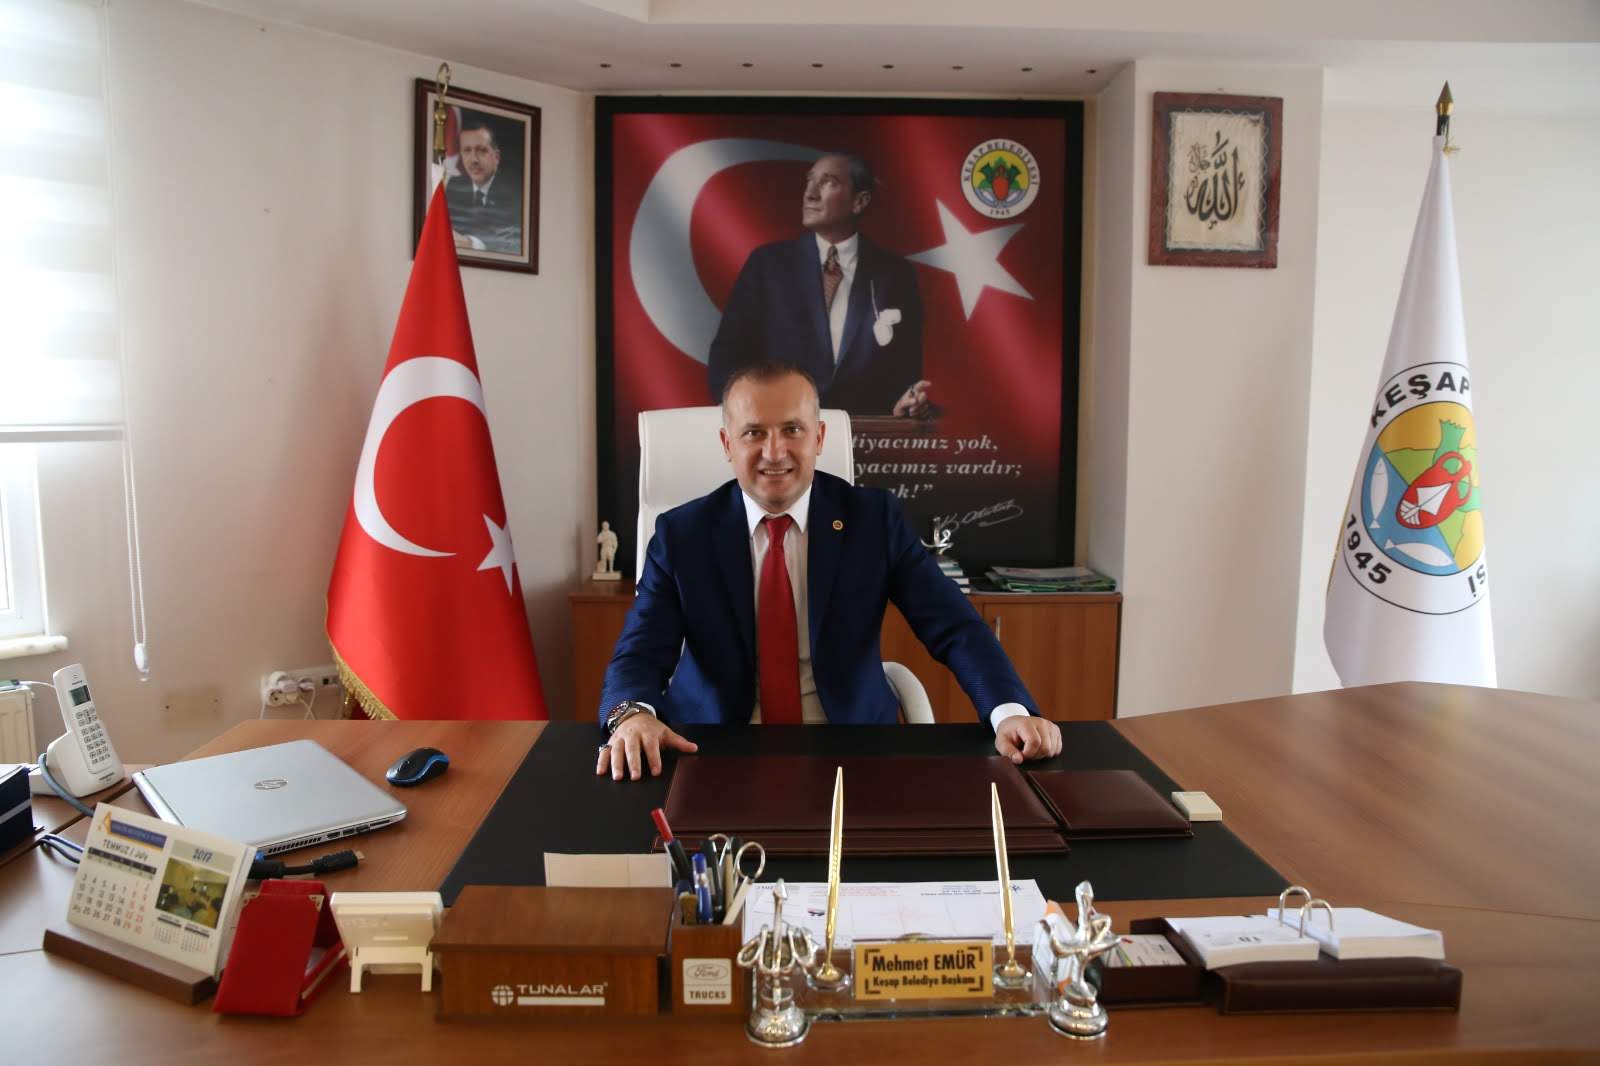 Başkan Emür; “Büyük Önder Atatürk’ün aydınlattığı ve çizdiği yol, her zaman hedefimiz olacaktır”